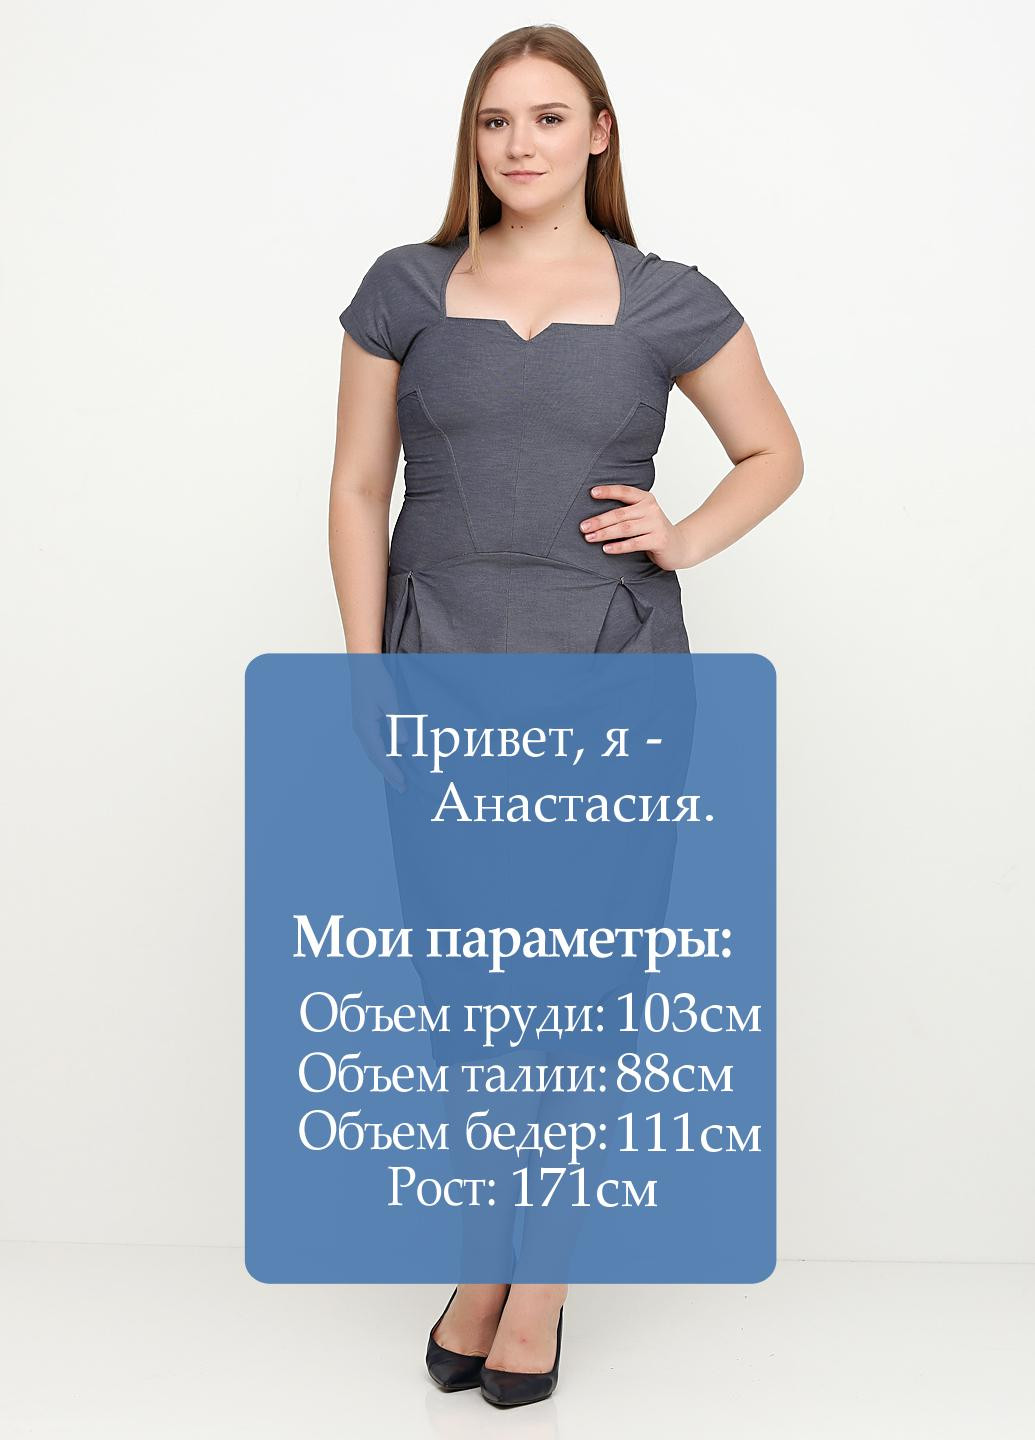 Грифельно-серое деловое платье Oblique однотонное